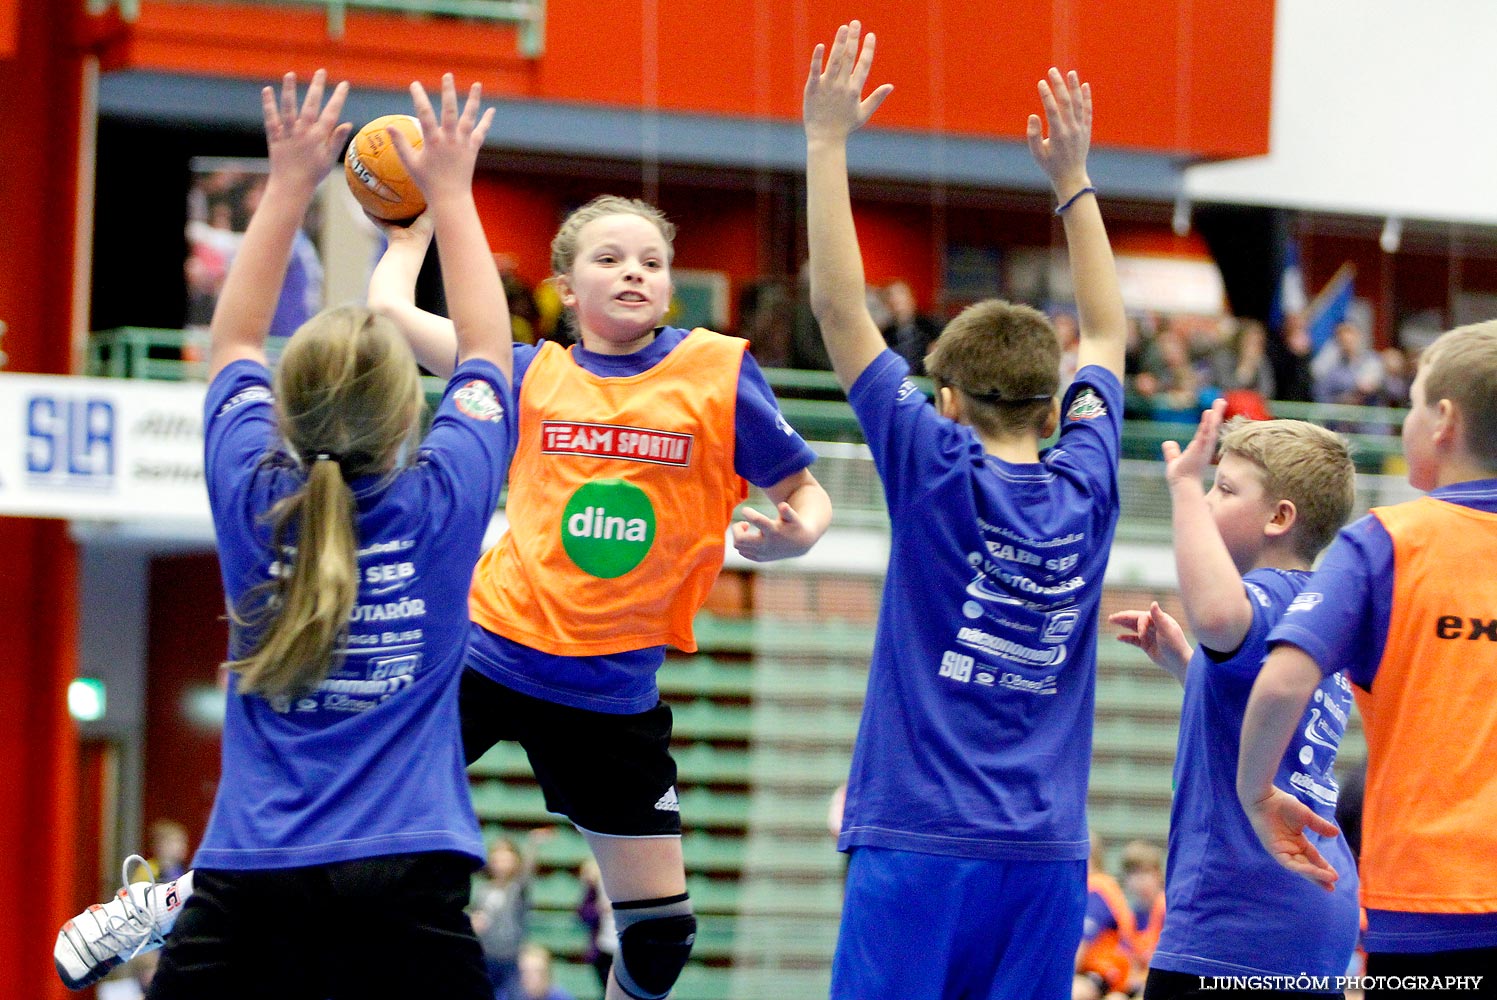 Klasshandboll Skövde 2012 Åldersklass 2001,mix,Arena Skövde,Skövde,Sverige,Handboll,,2012,46977